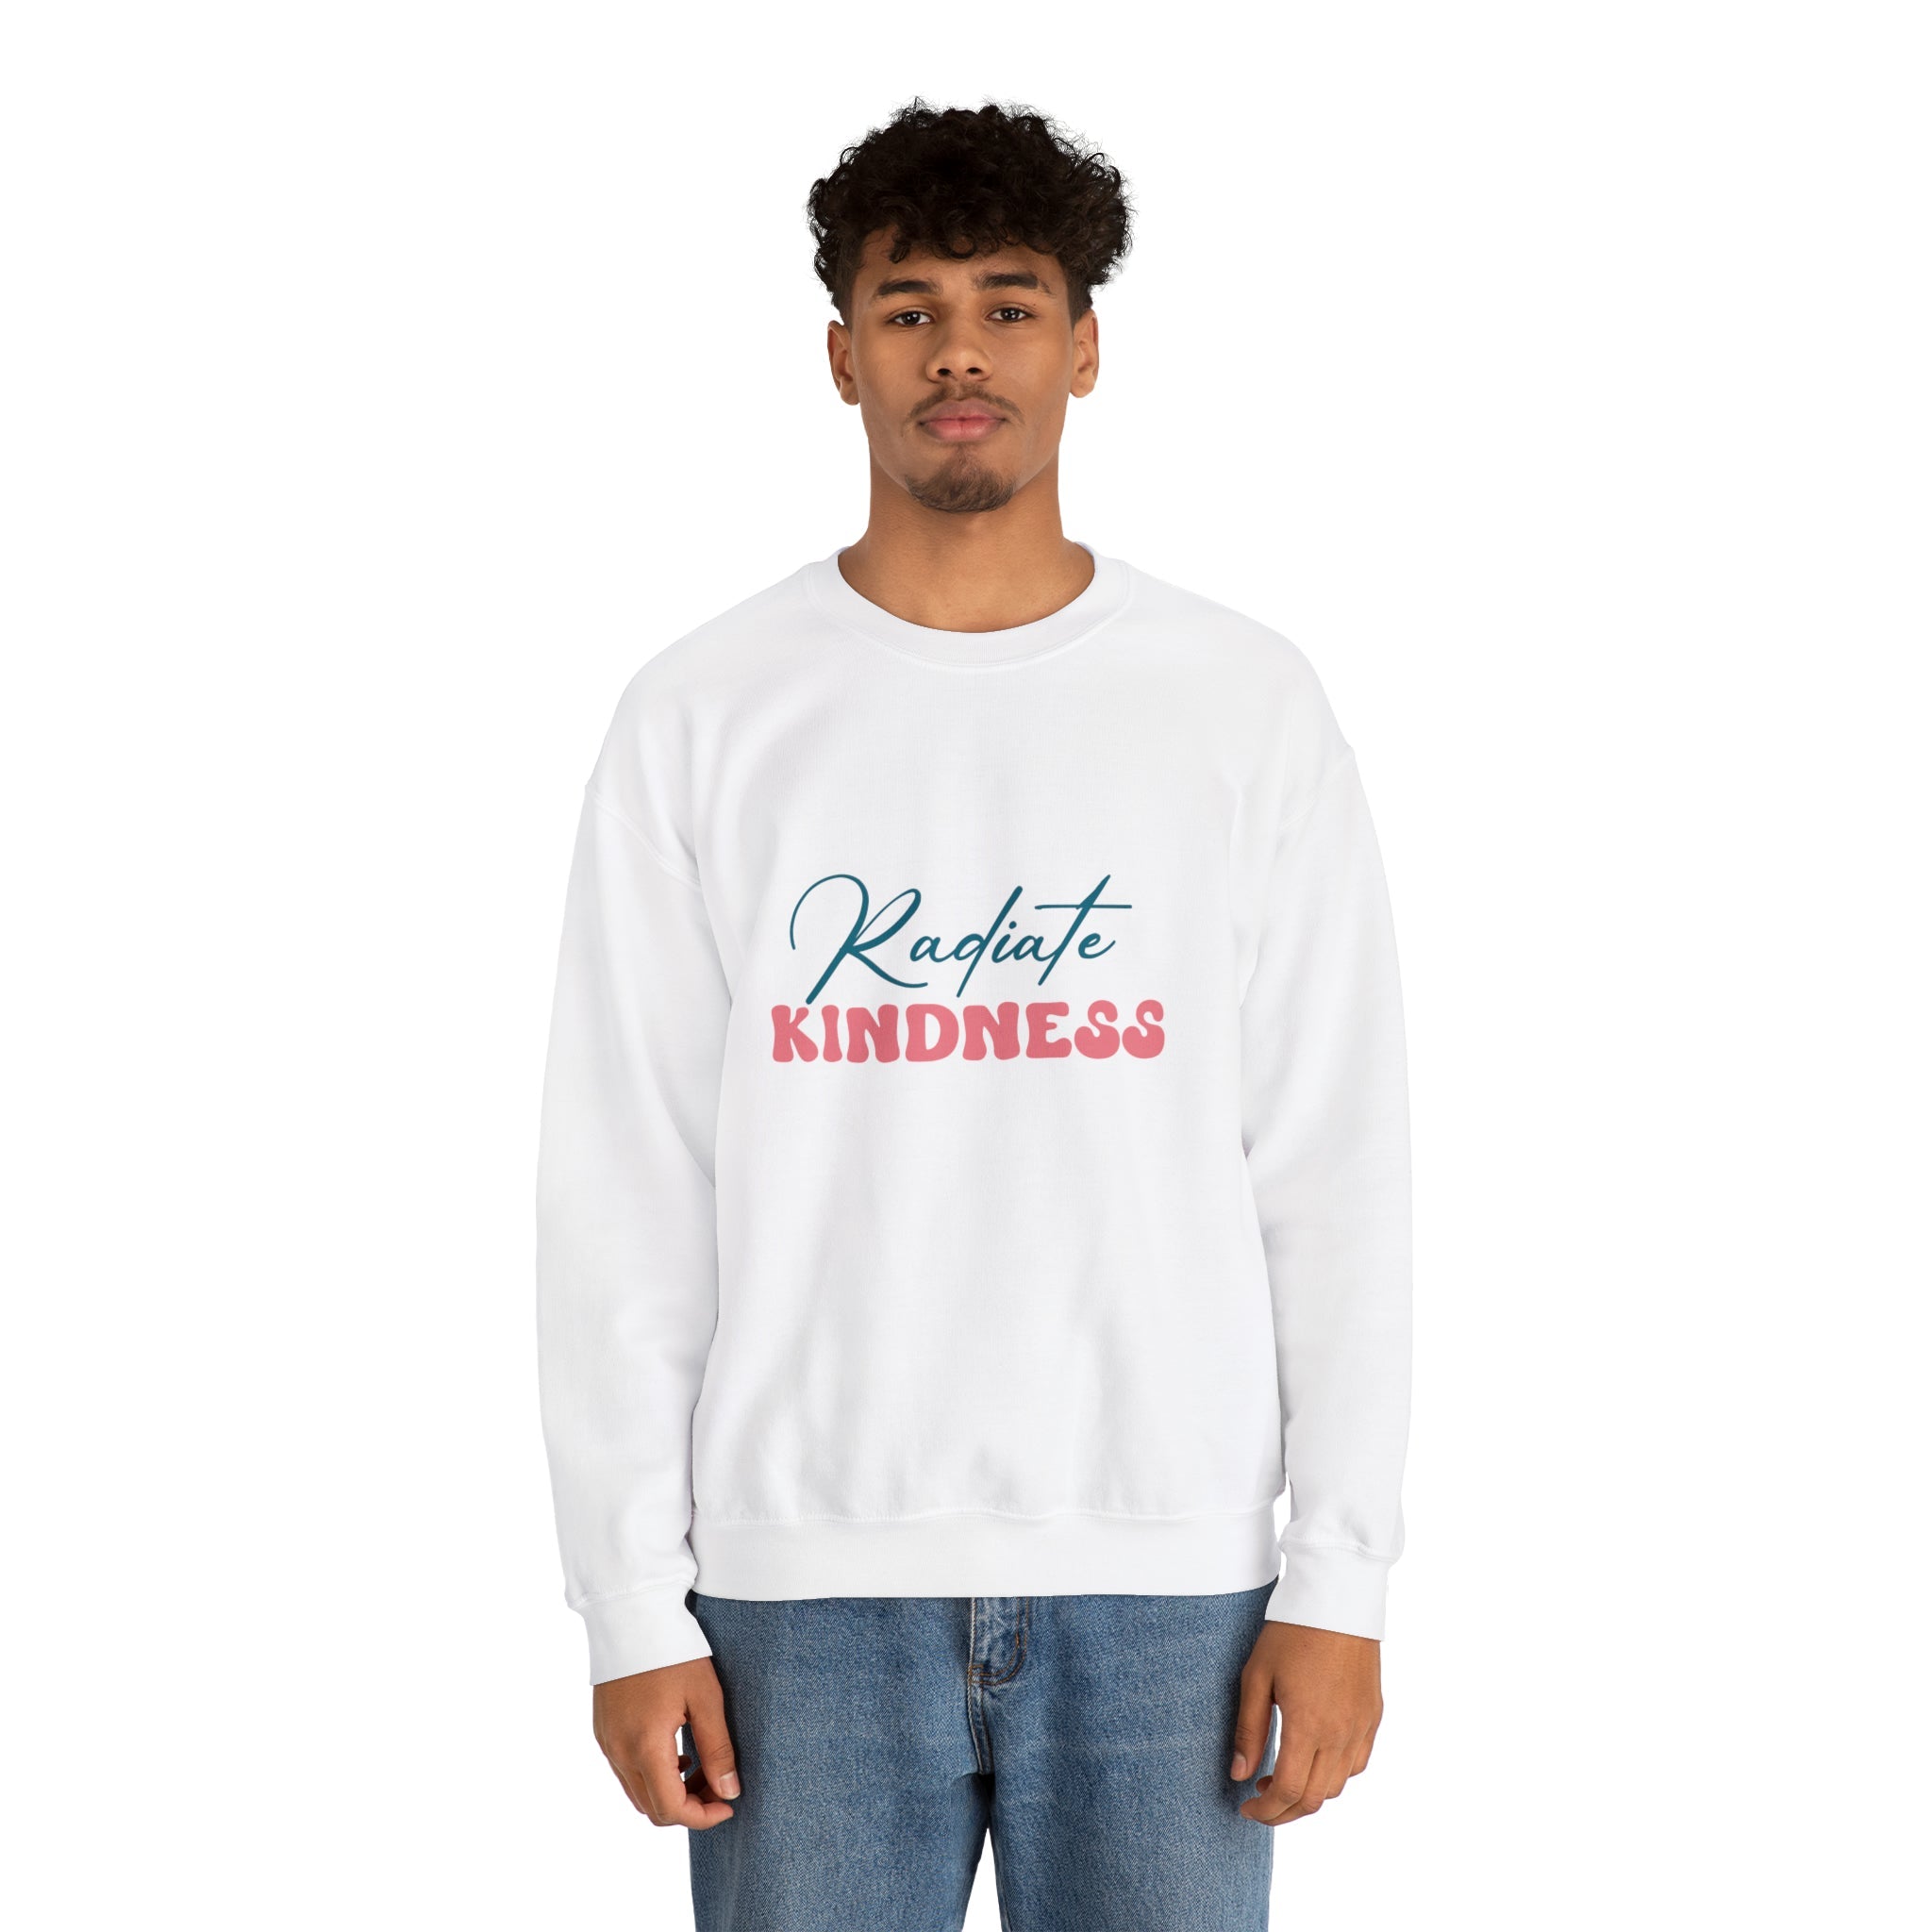 Radiate Kindness Crewneck Sweatshirt - Behibrid